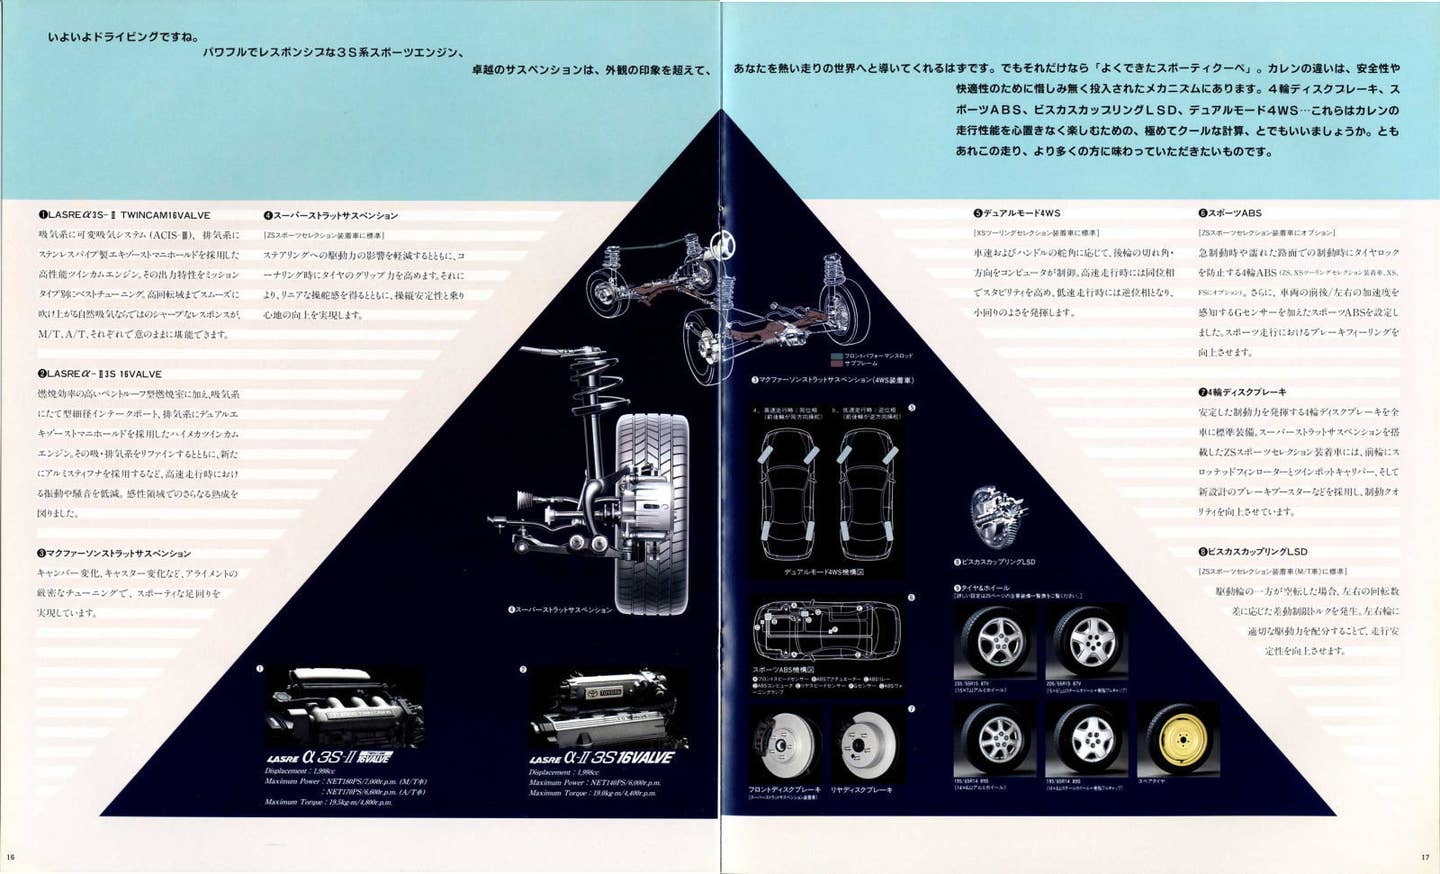 1994 Toyota Curren brochure scans